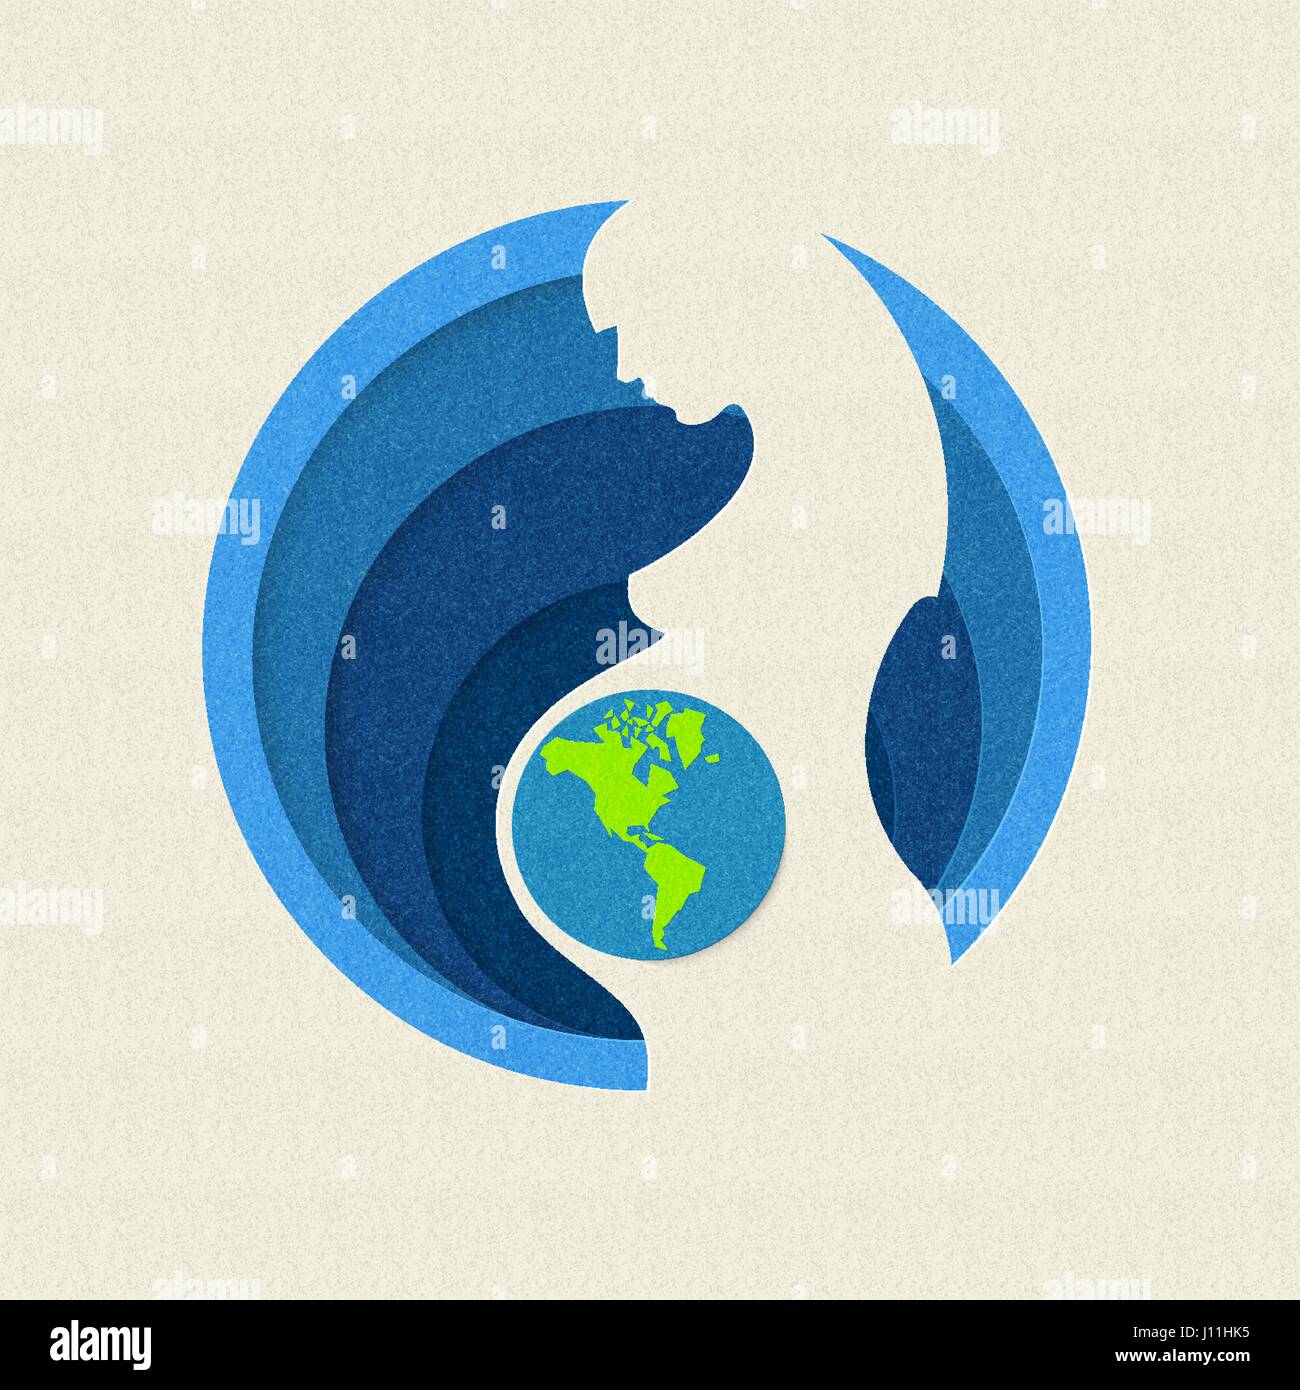 Le jour de la terre découper papier illustration de silhouette de femme enceinte avec planet. Concept de soins de mère nature. Vecteur EPS10. Illustration de Vecteur